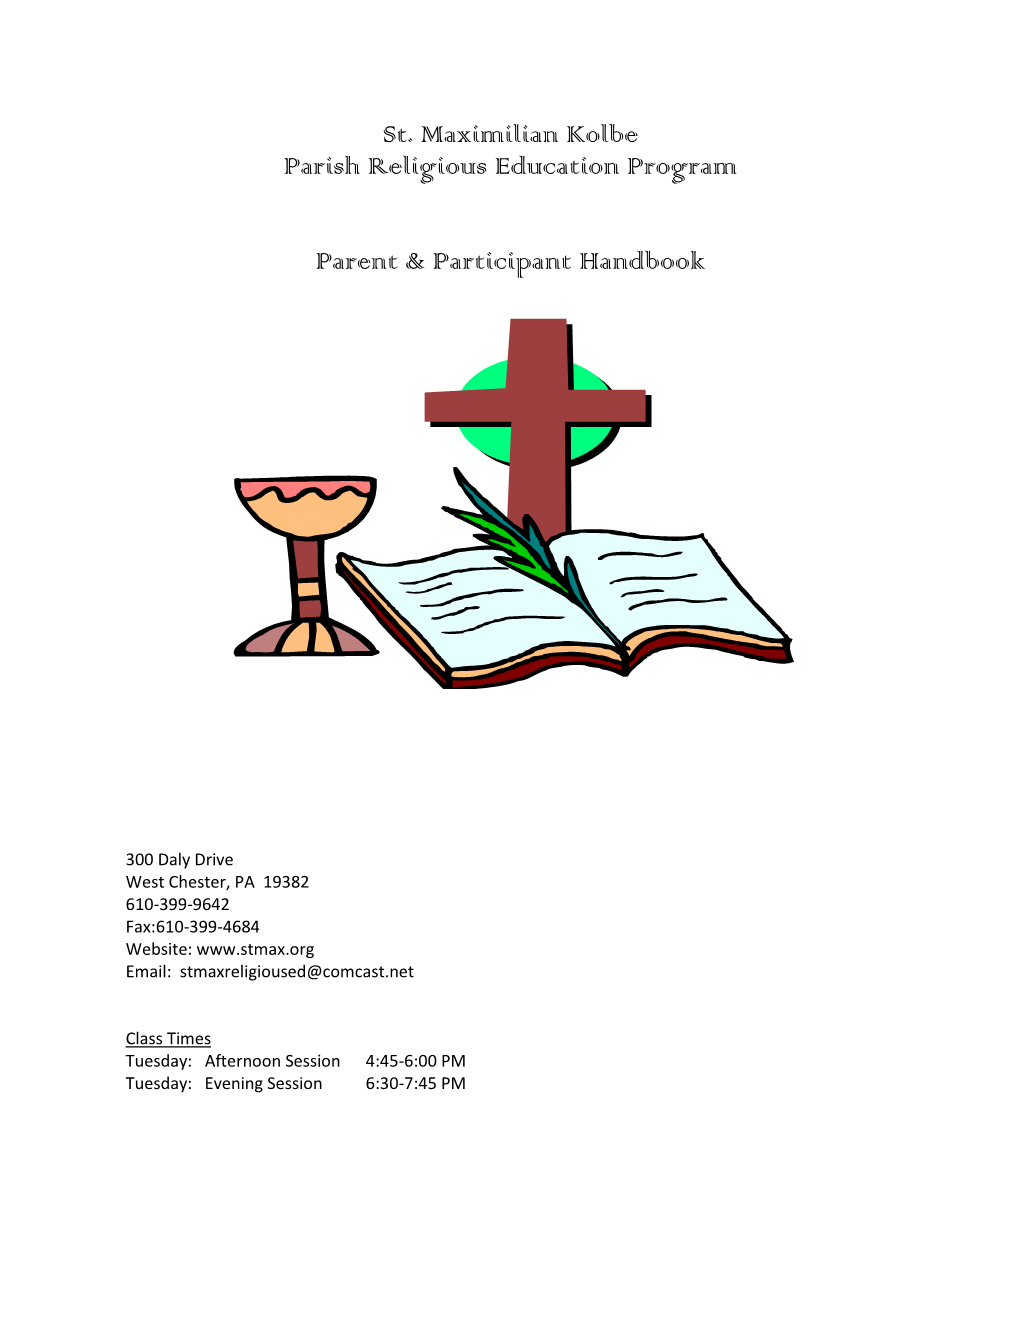 St. Maximilian Kolbe Parish Religious Education Program Parent